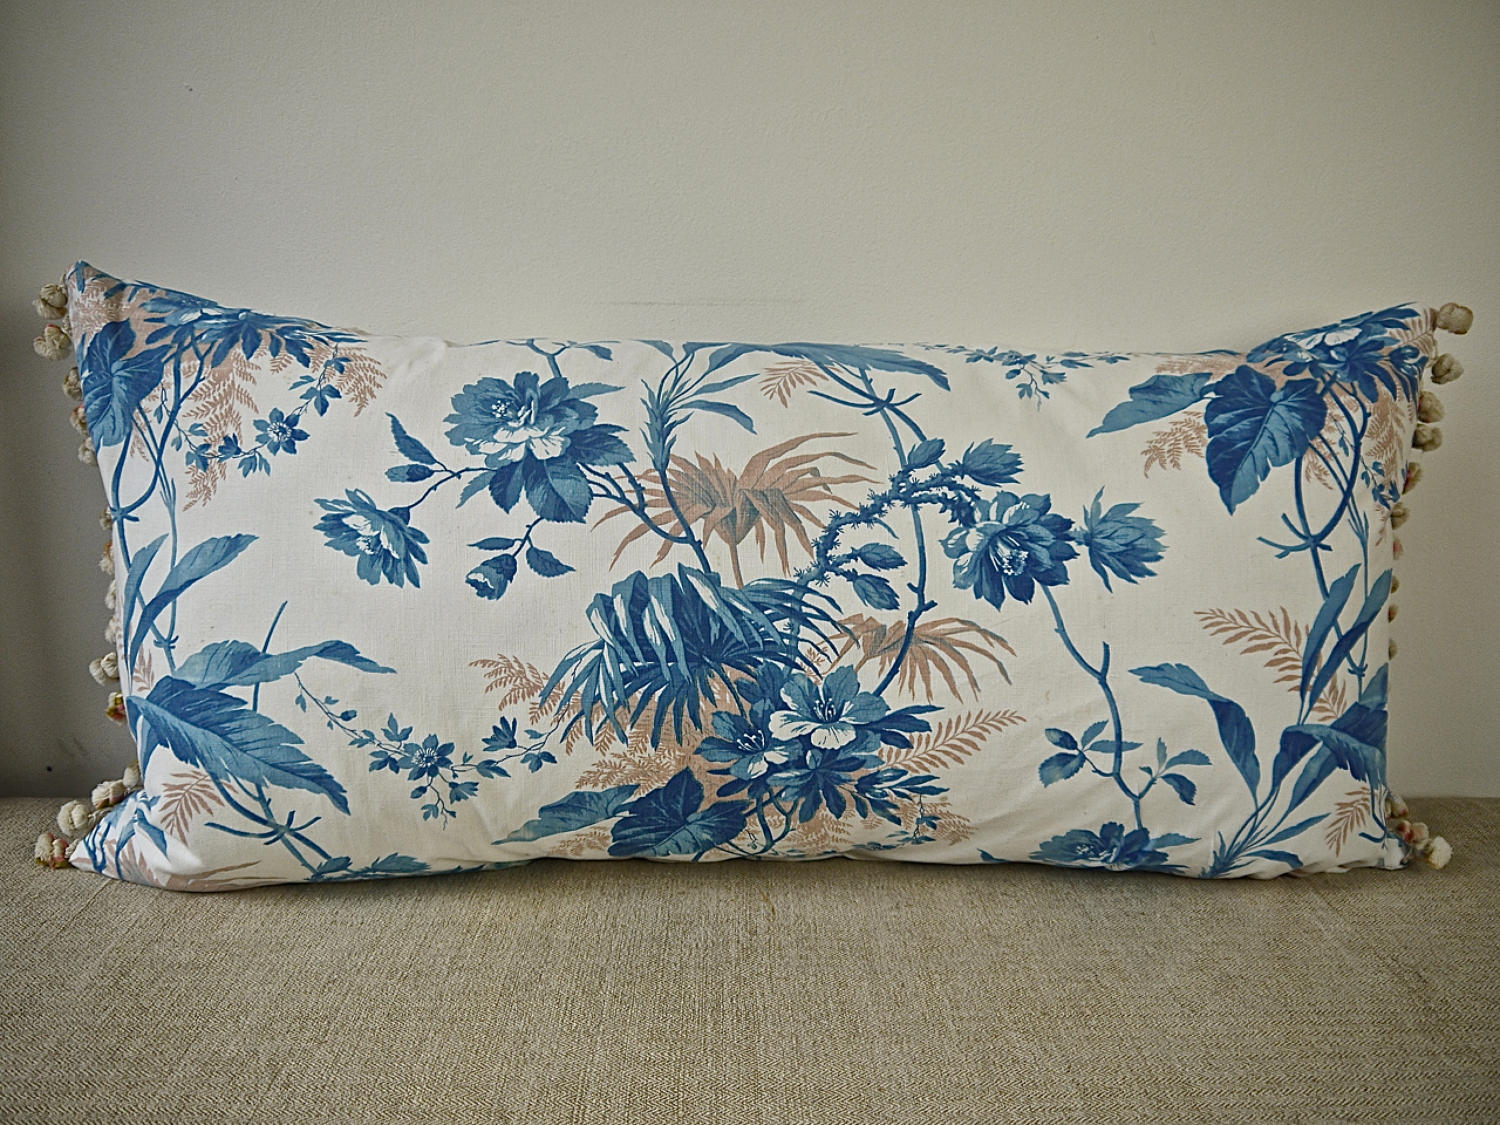 19th century French blue fern leaves cushion